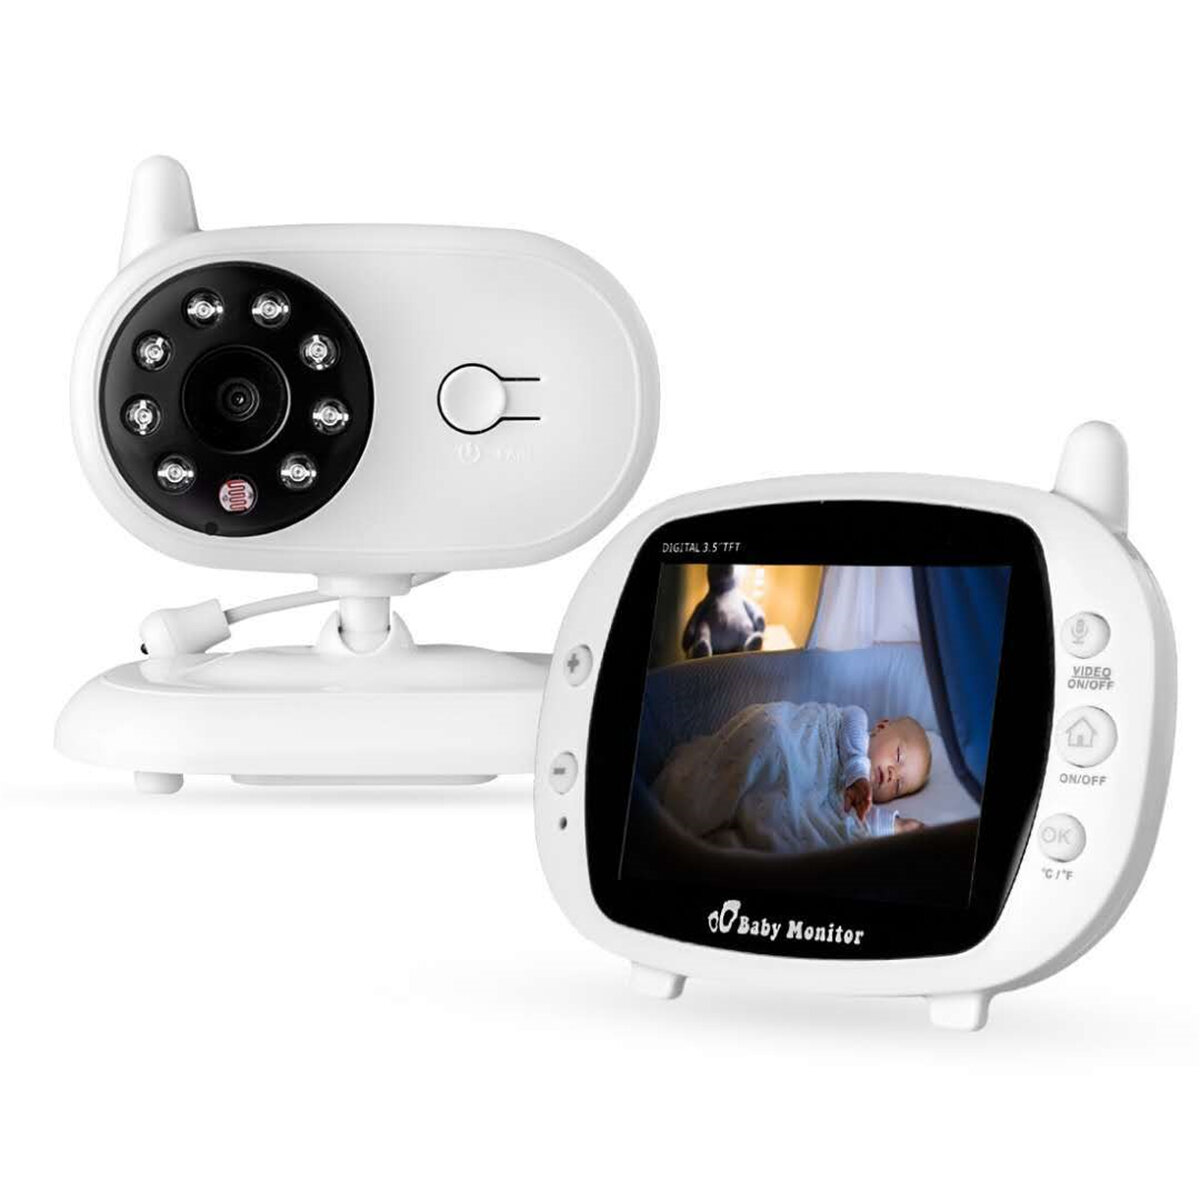 Στα 43.22 € από αποθήκη Τσεχίας | 3.5 inch Baby Monitor 2.4GHz Video LCD Digital Camera Night Vision Temperature Monitoring Monitors